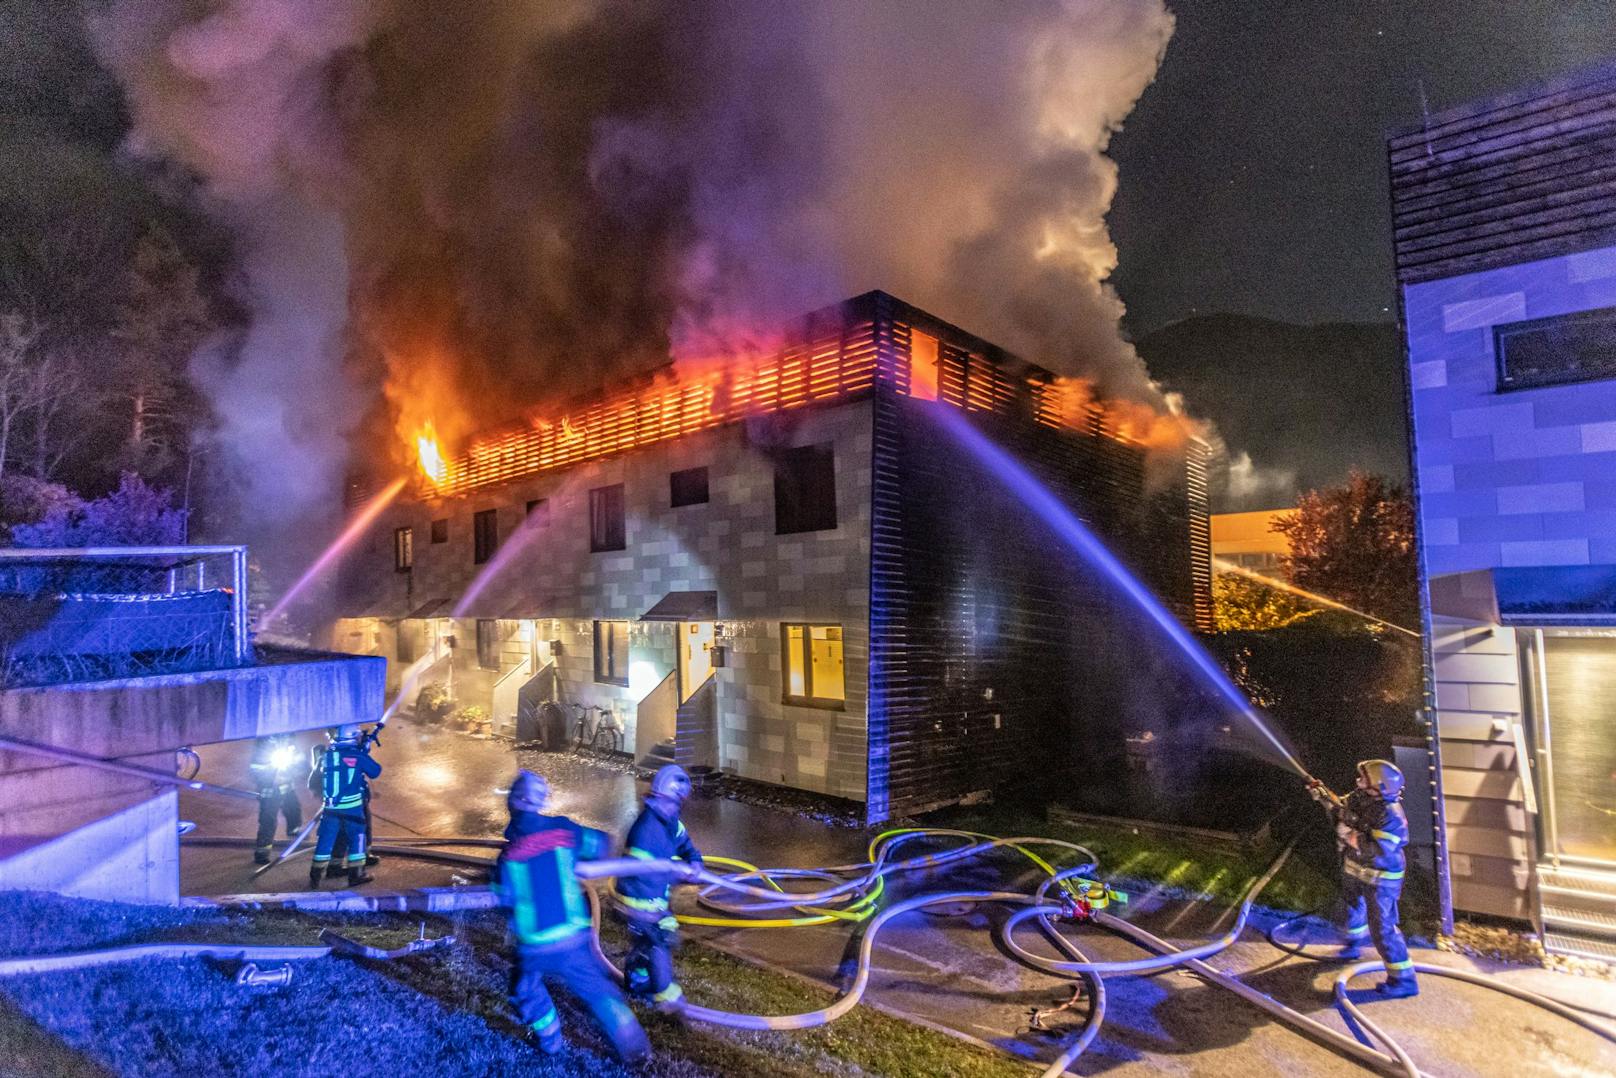 In einem Mehrfamilienhaus in Lienz (Osttirol) ist in der Nacht auf Freitag ein Feuer ausgebrochen.